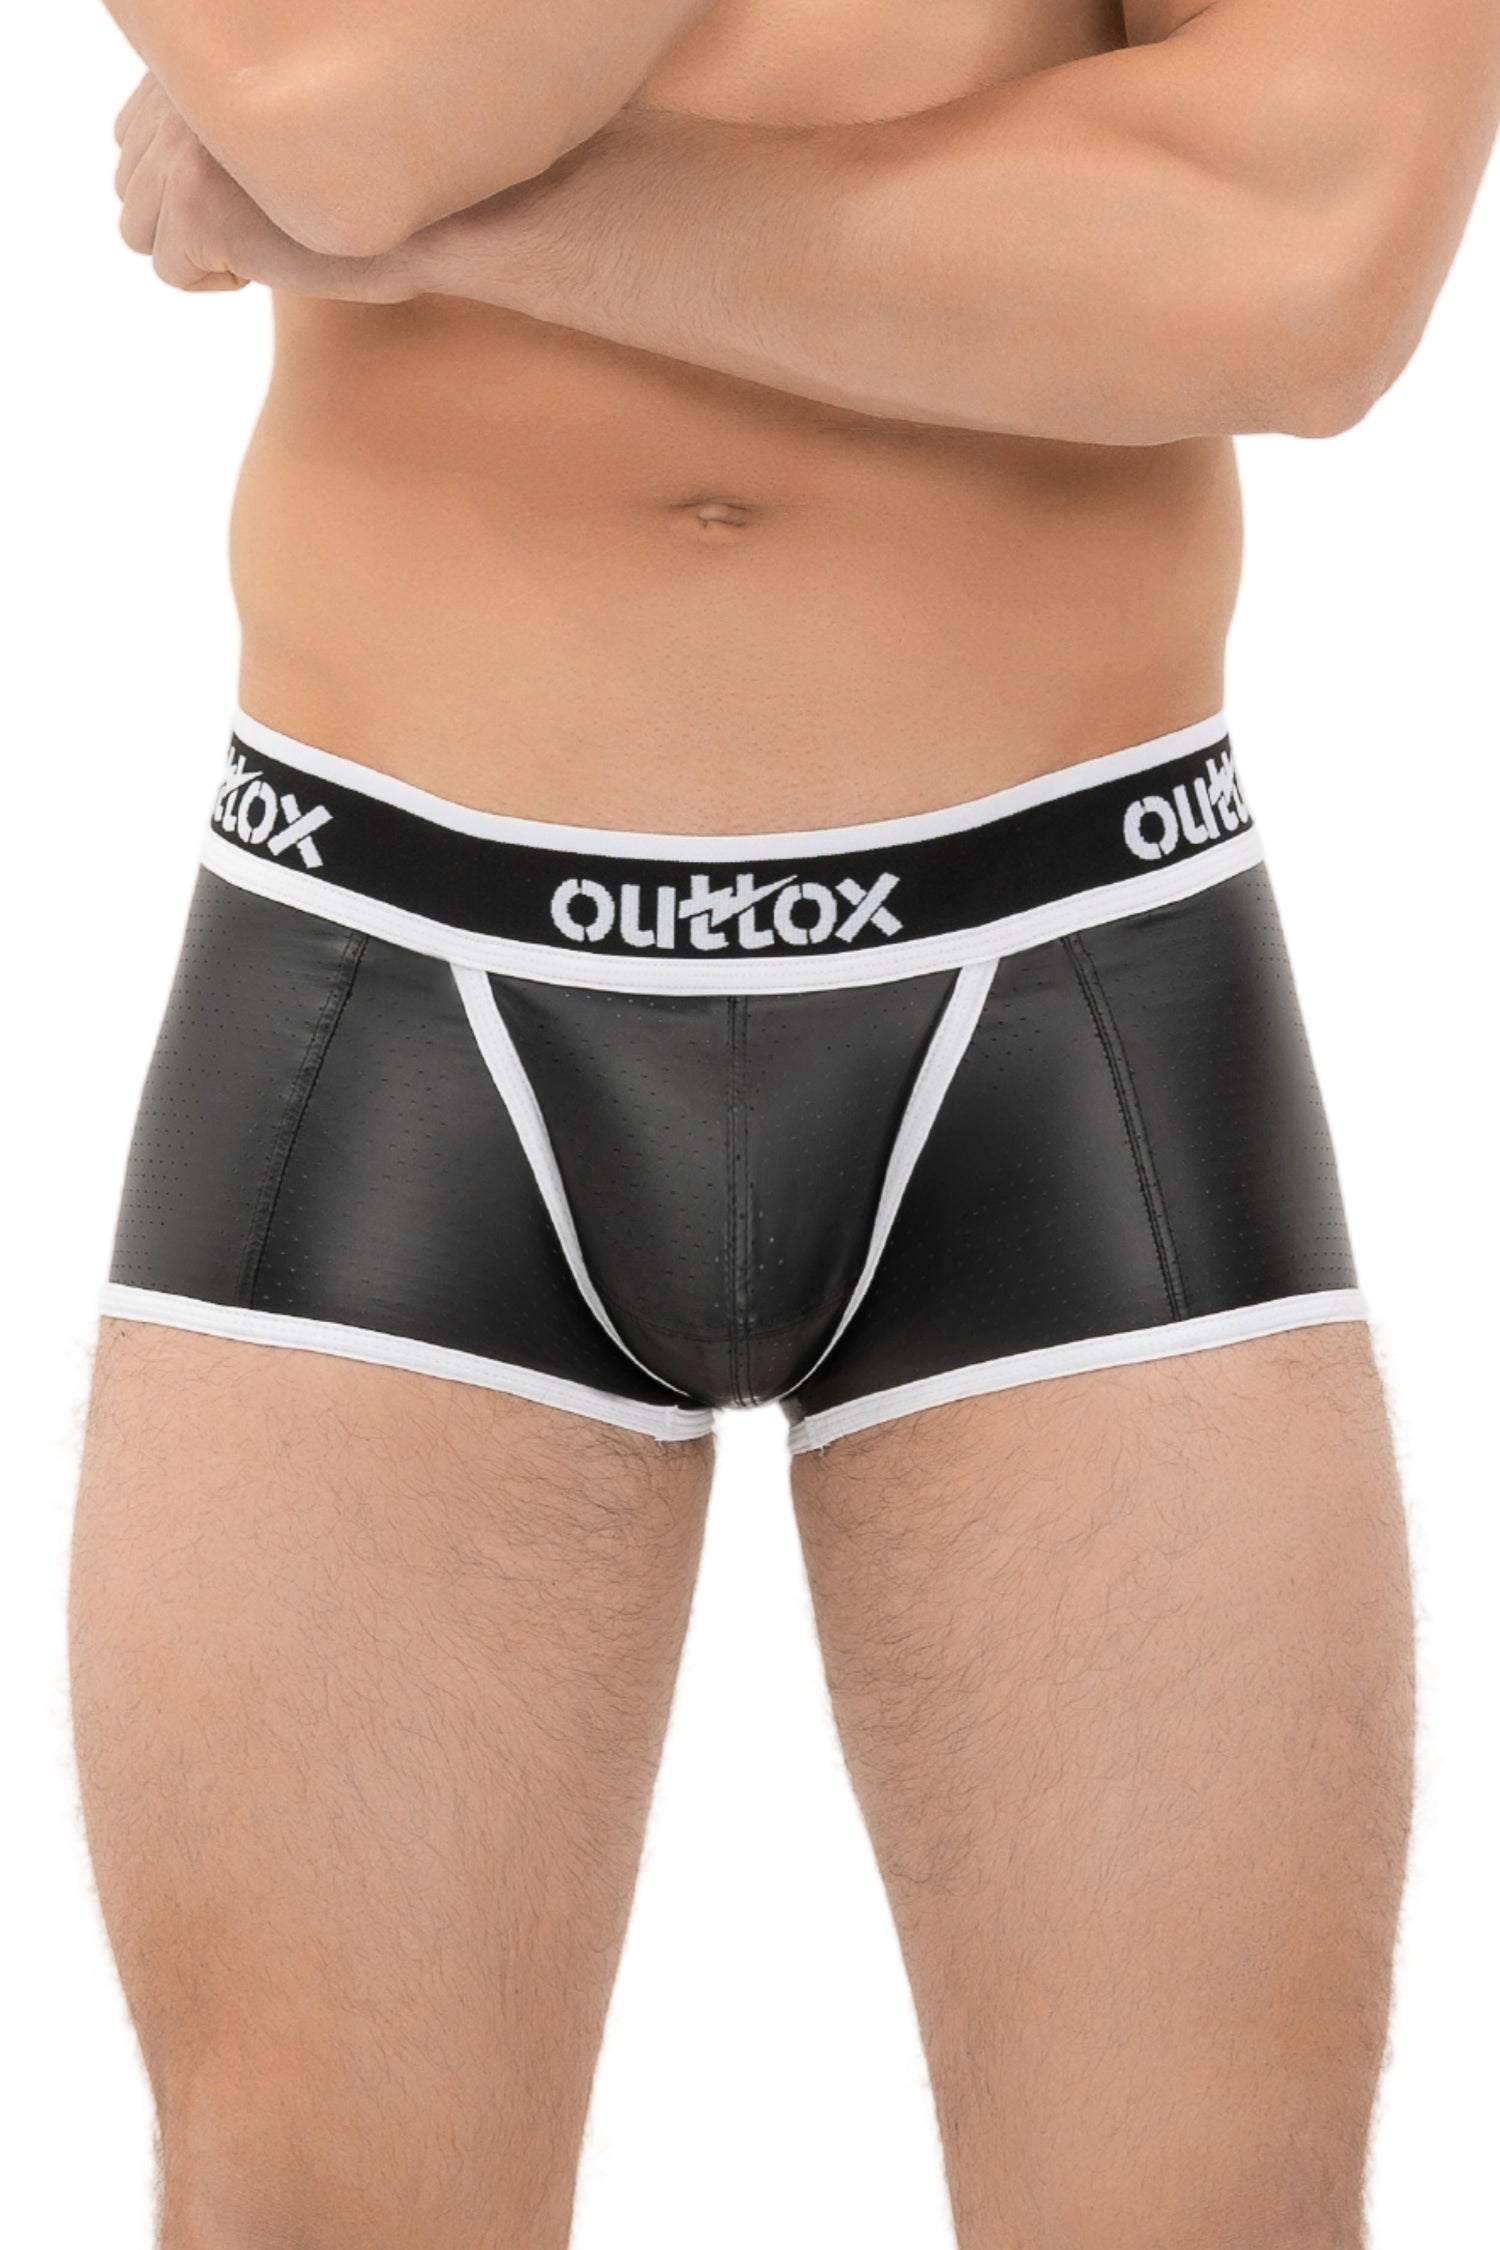 Outtox. Pantalones cortos traseros envueltos con bragueta a presión. Negro+Blanco